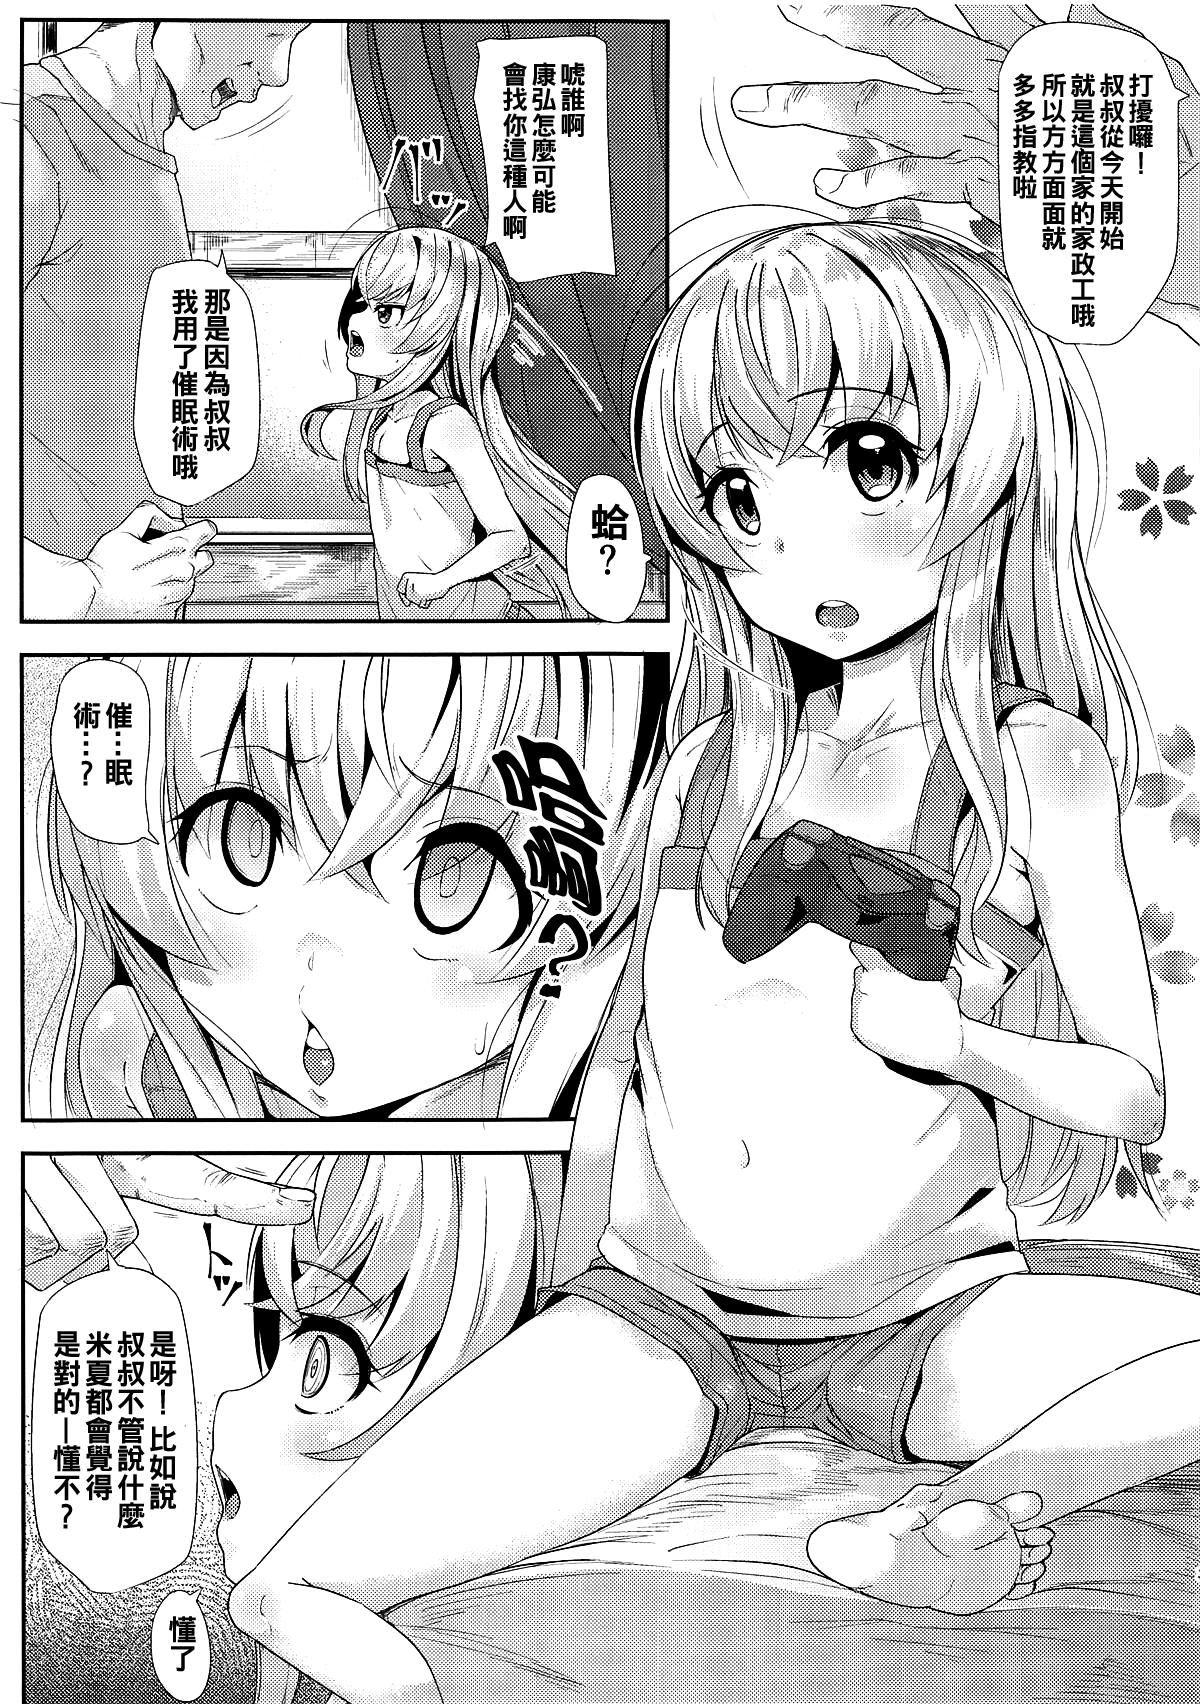 Chacal Kashikoi Misha-chan - Uchi no maid ga uzasugiru Selfie - Page 3